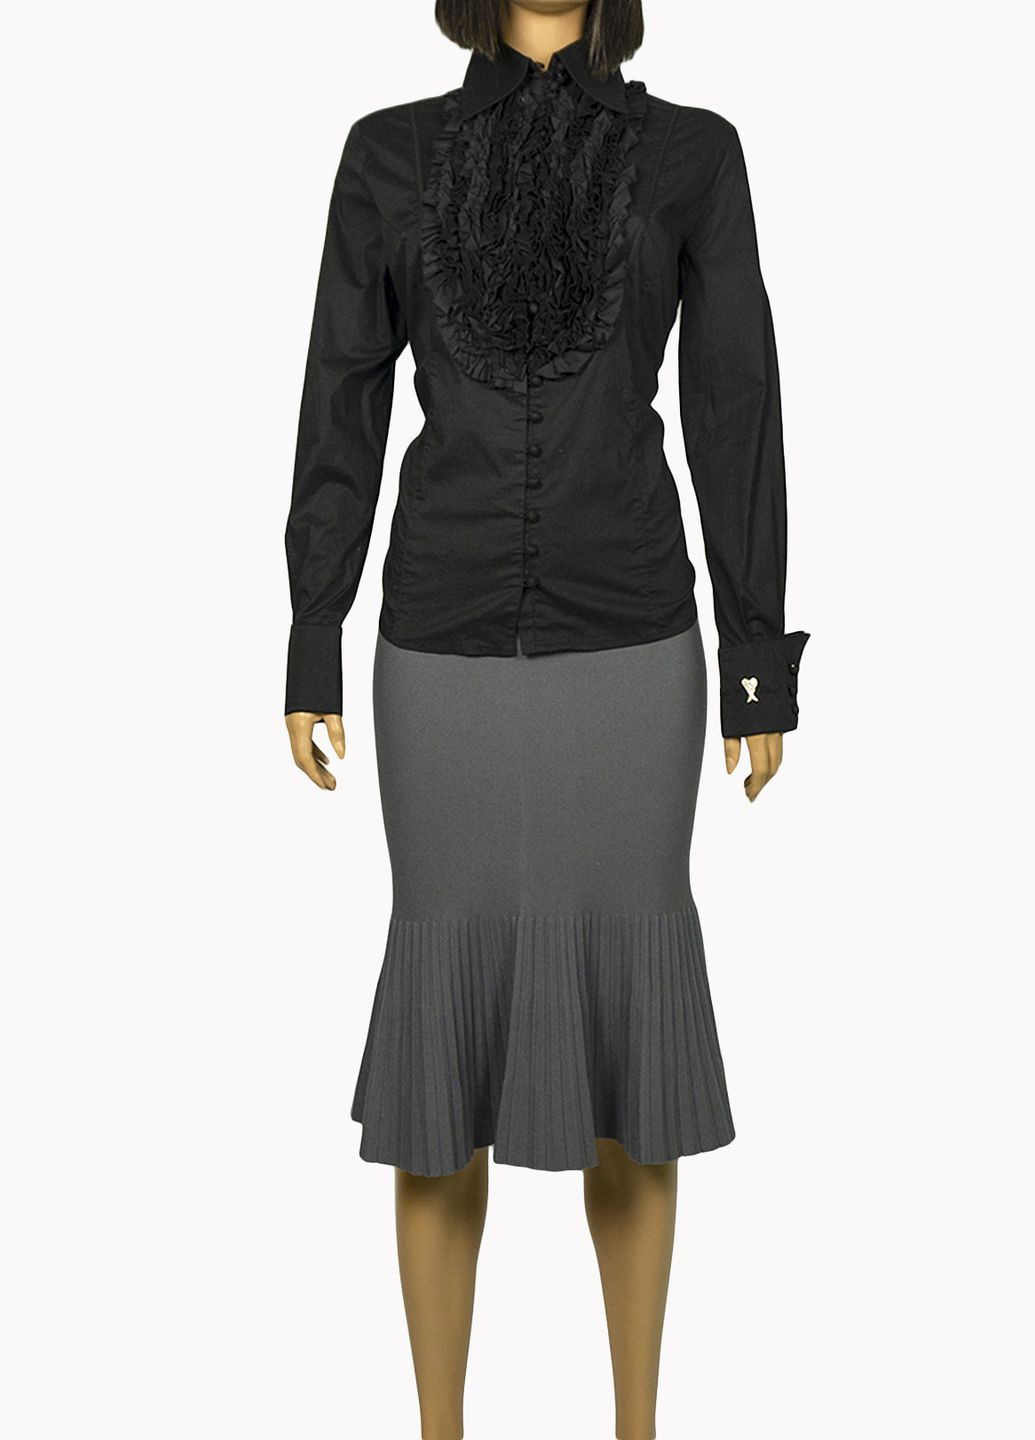 Черная демисезонная женская блуза с жабо fv-006233 черный Lowett